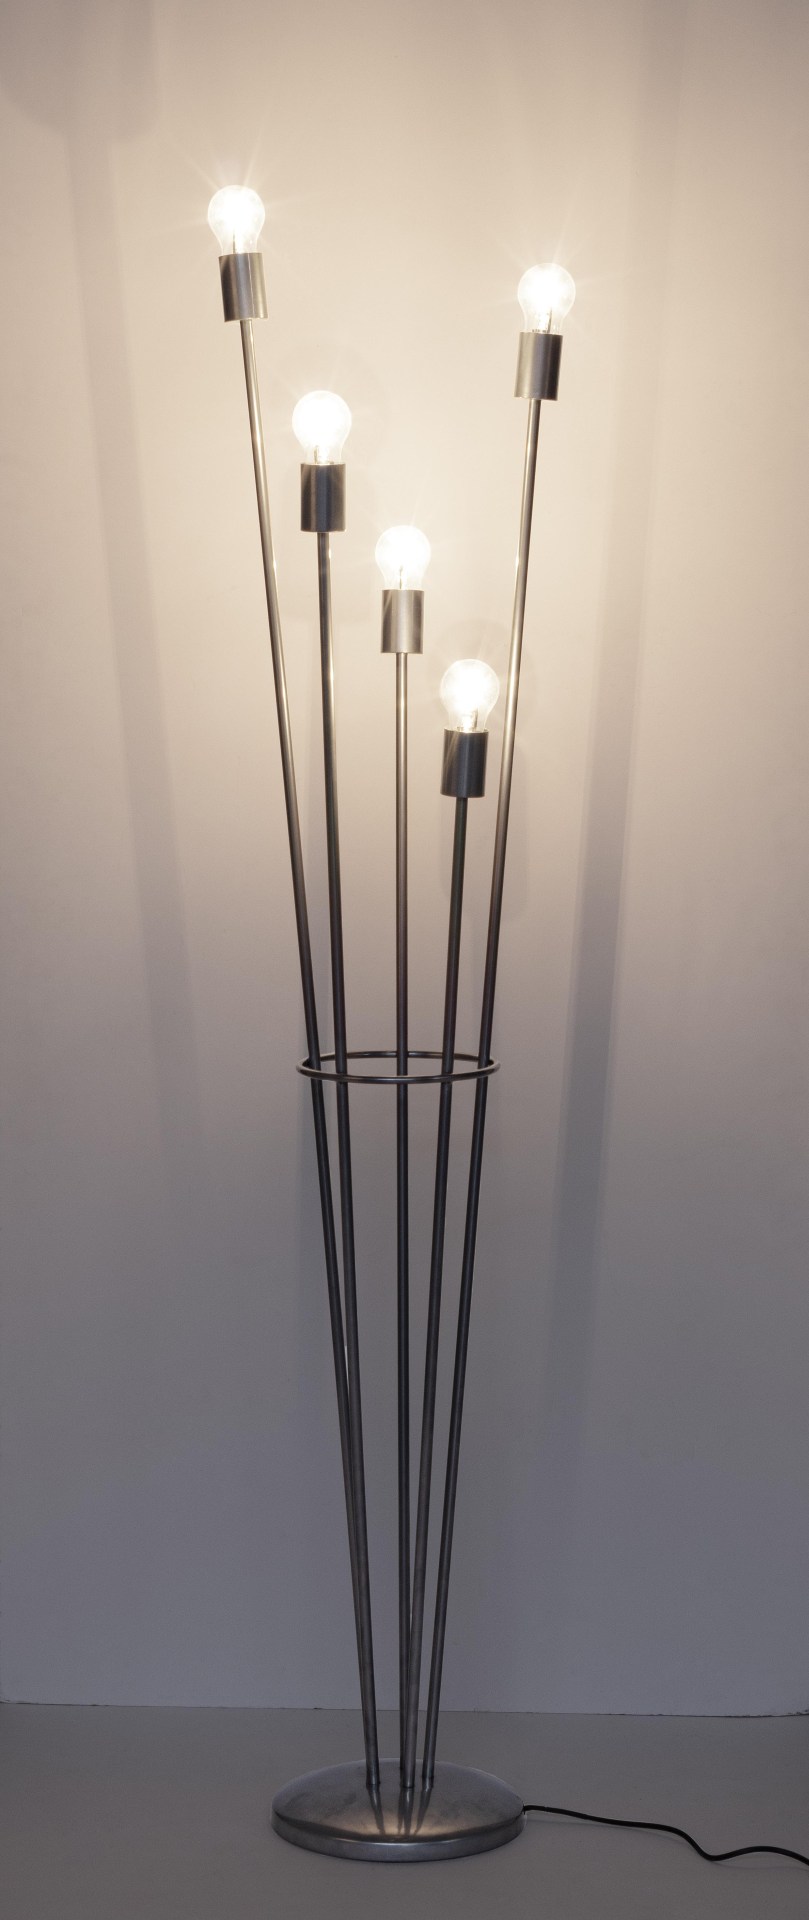 Die Stehleuchte Fiaccola überzeugt mit ihrem modernen Design. Gefertigt wurde sie aus Metall, welches einen silbernen Farbton besitzt. Die Lampenschirme ist aus Glas. Die Lampe besitzt eine Höhe von 155 cm.